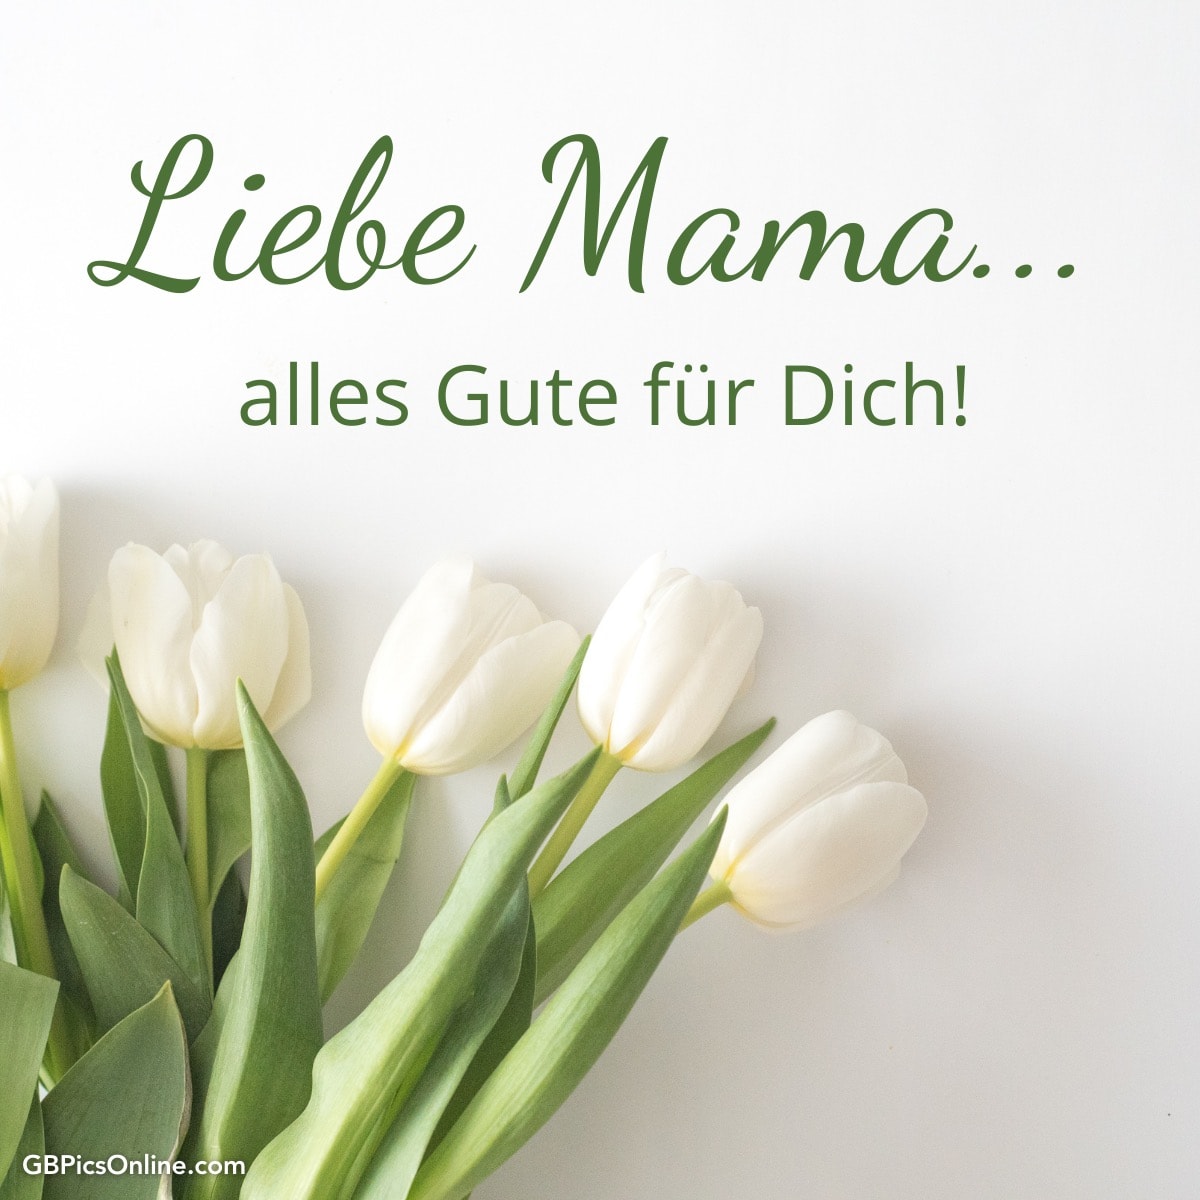 Weiße Tulpen und die Worte „Liebe Mama... alles Gute für Dich!“ auf hellem Hintergrund